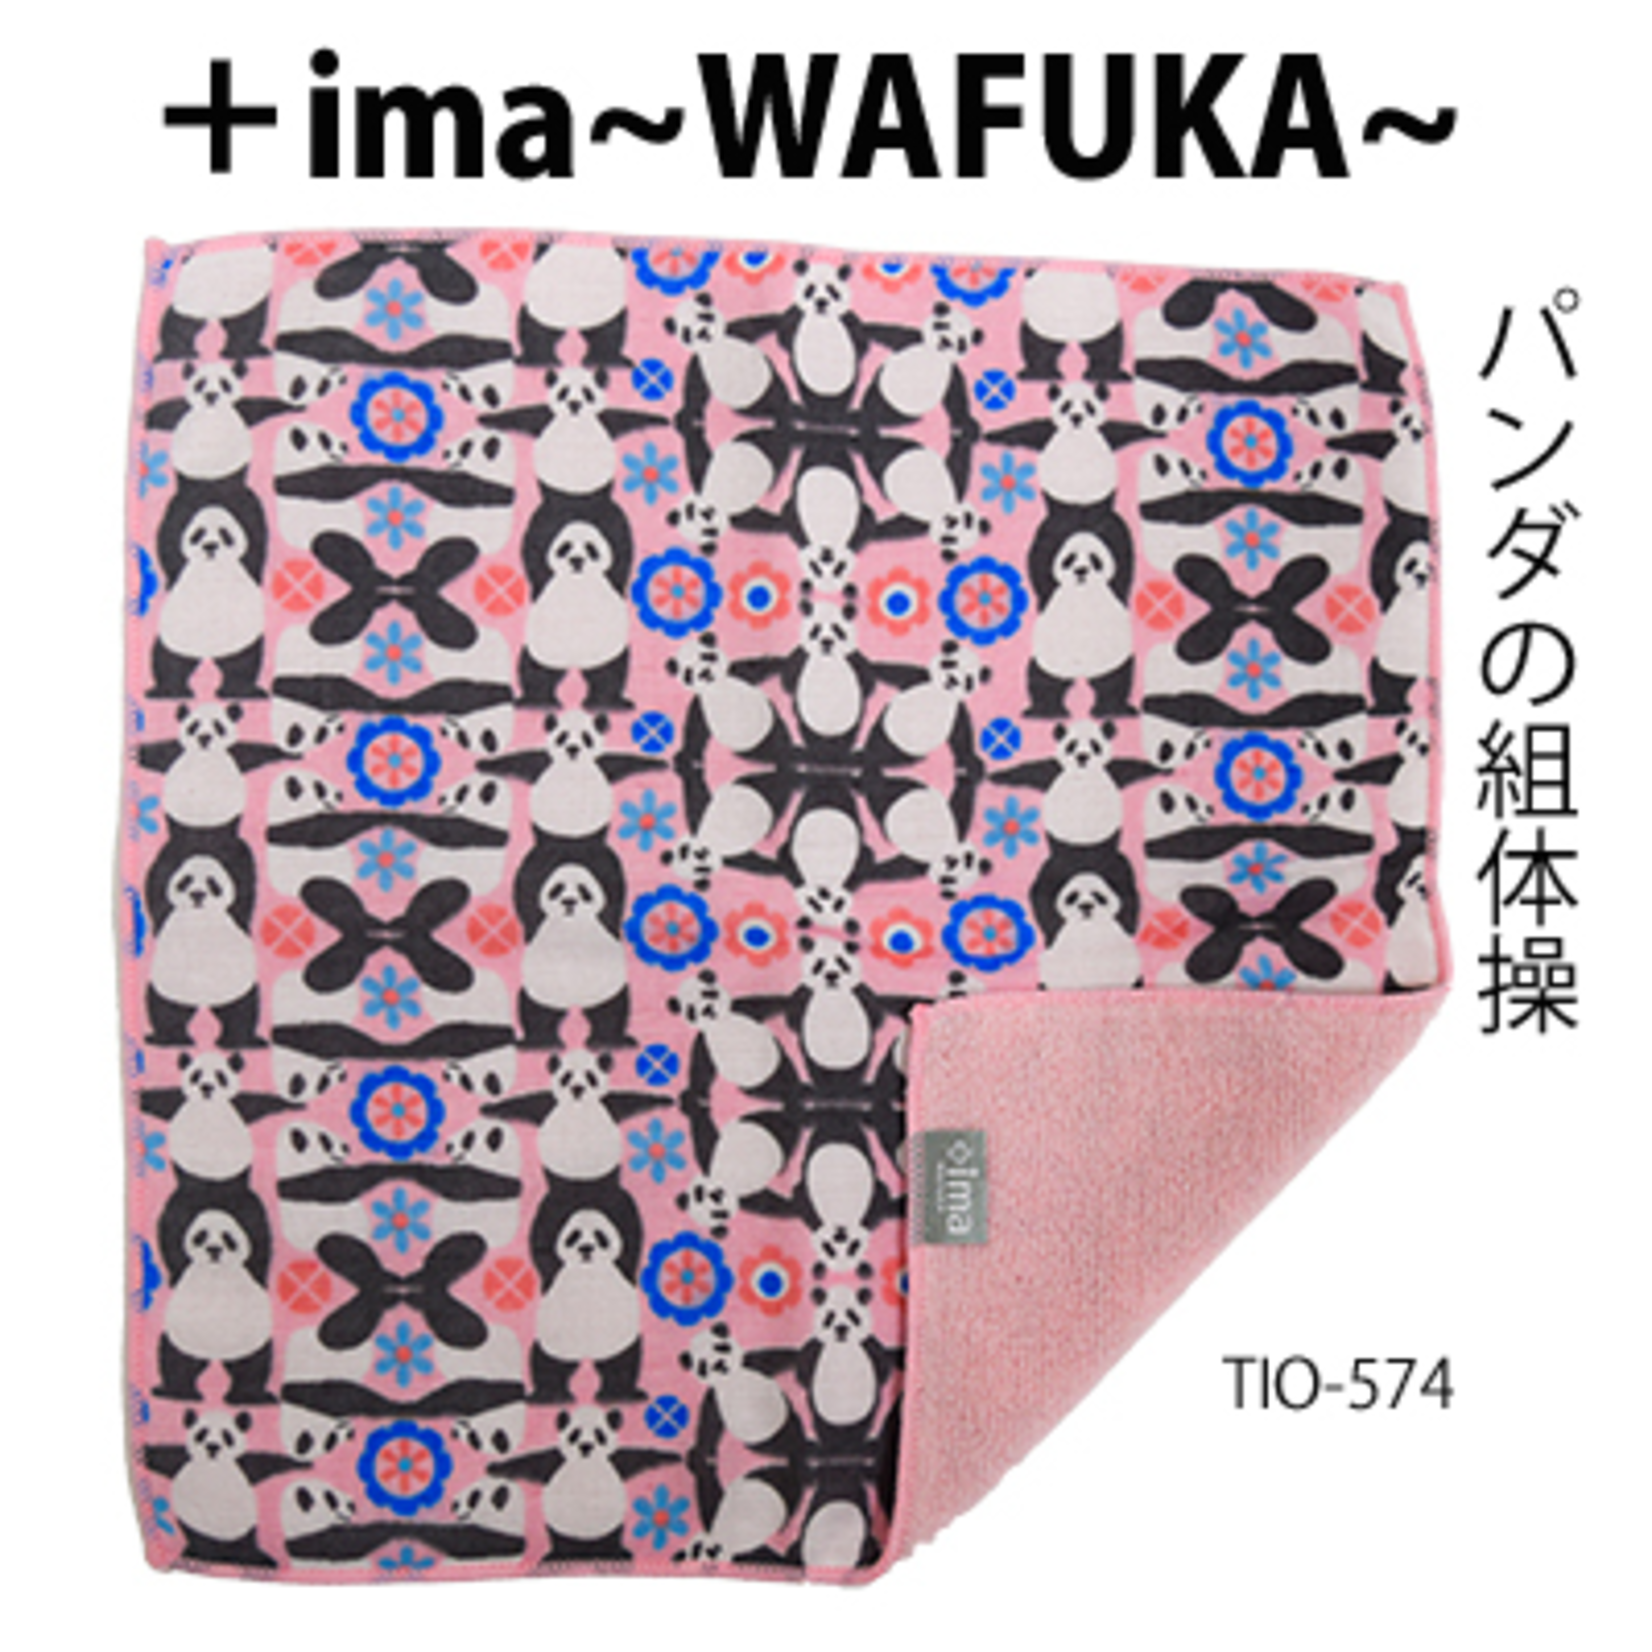 ima wafuka Handkerchief Panda Gymnastics- TIO-574